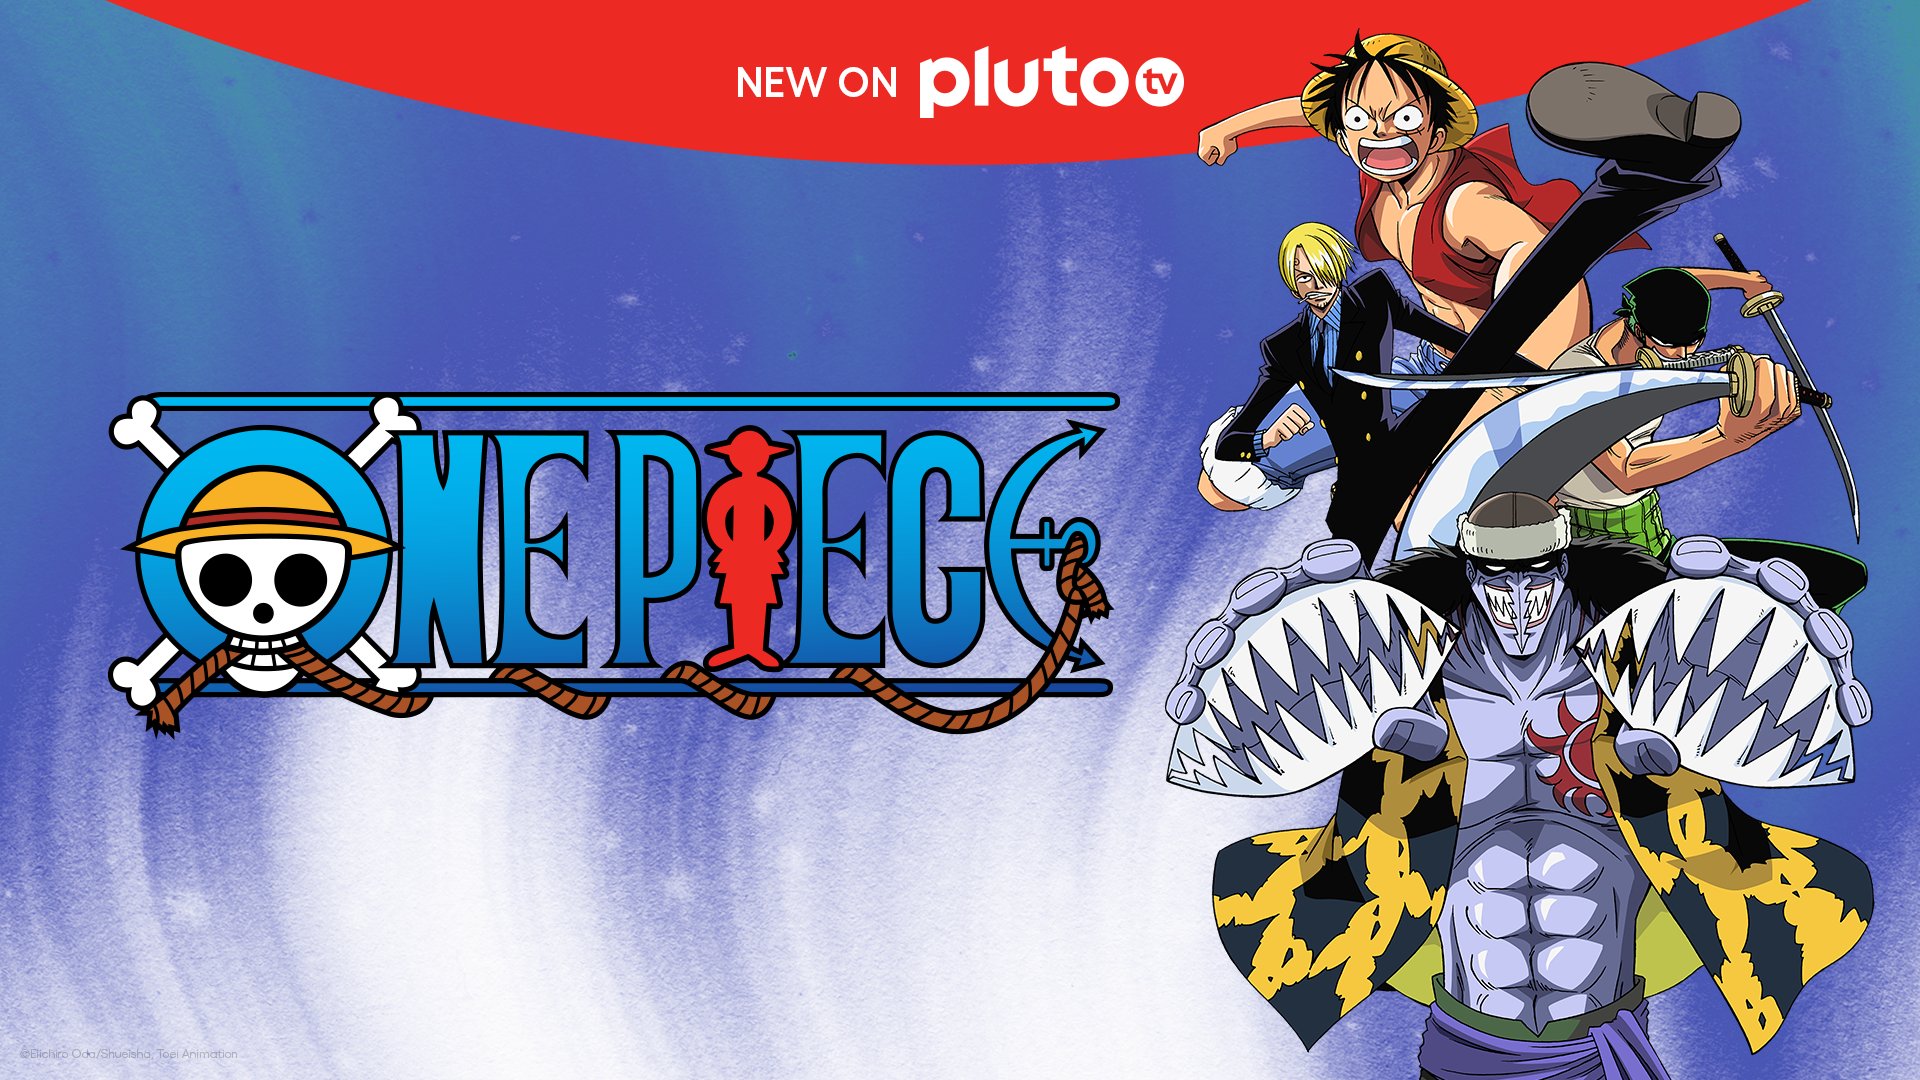 24 anos da estreia do anime de One Piece - qual seu personagem favorito? :  r/animebrasil